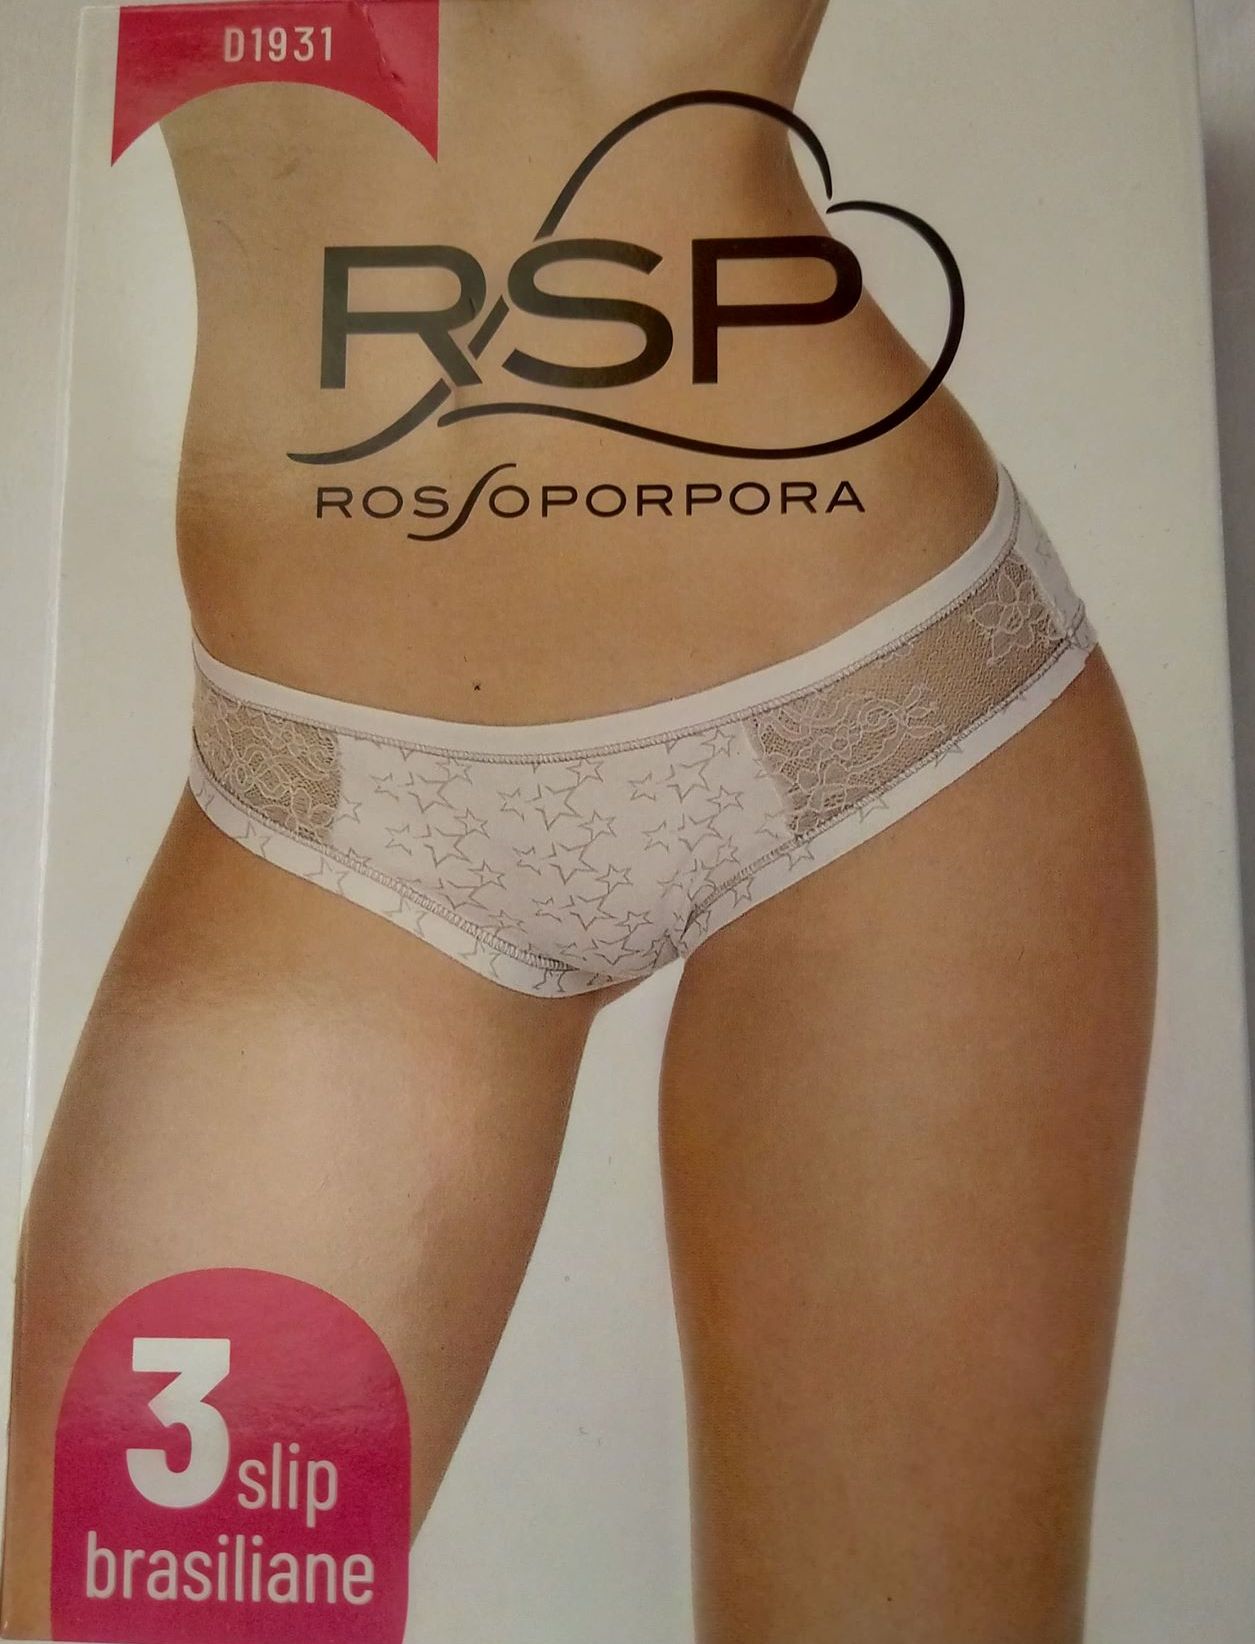 Σλιπ Brazil "Rosso Porpora D1931",3 pack.